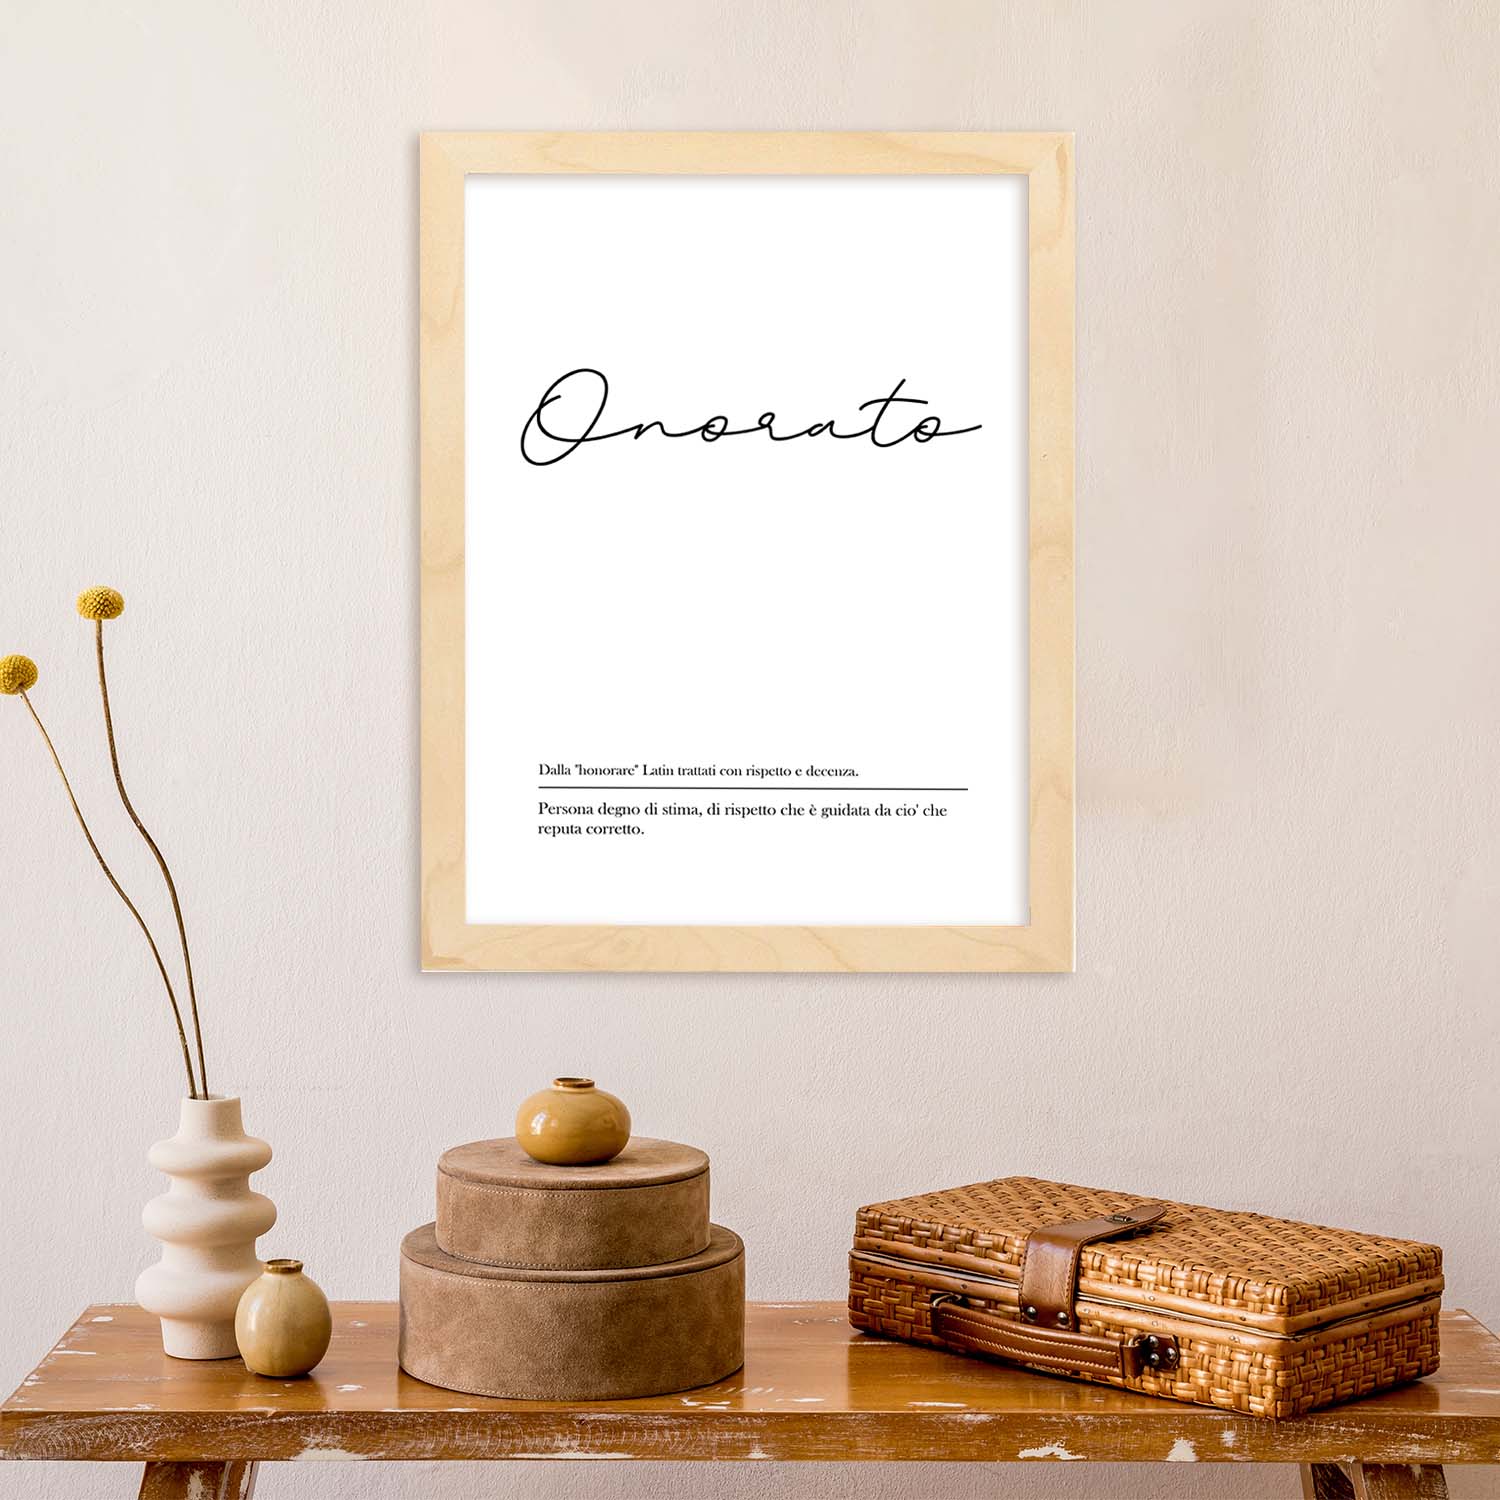 Lámina con definicion de palabras en italiano. Poster 'Onorato' de palabras con definiciones.-Artwork-Nacnic-Nacnic Estudio SL